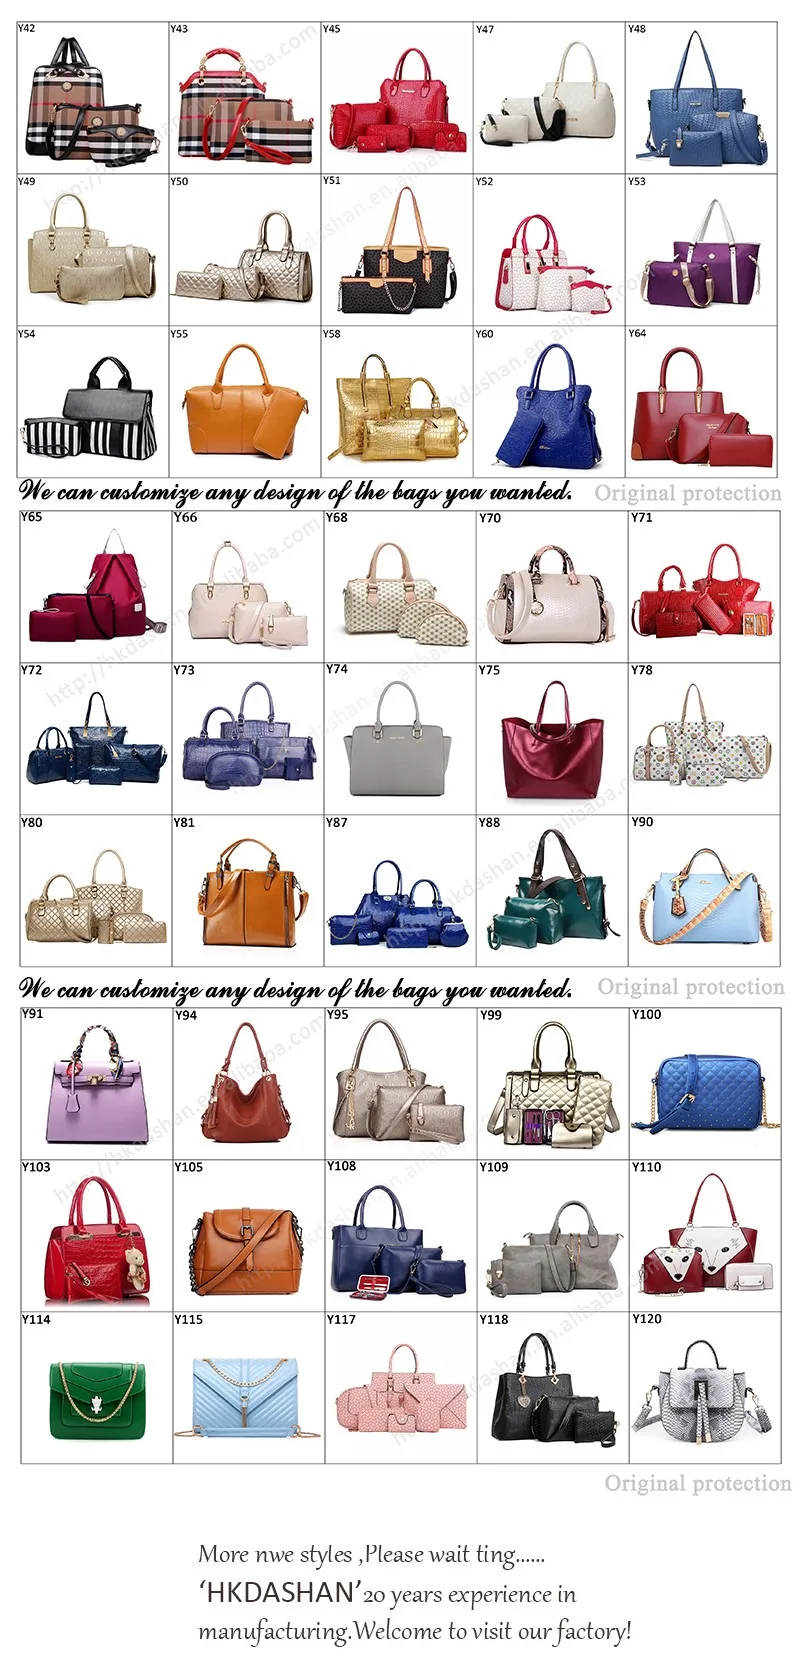 Название моделей сумок. Модели сумок названия. Сумки женские по названиям. Формы сумок женских. Виды сумок женских названия.